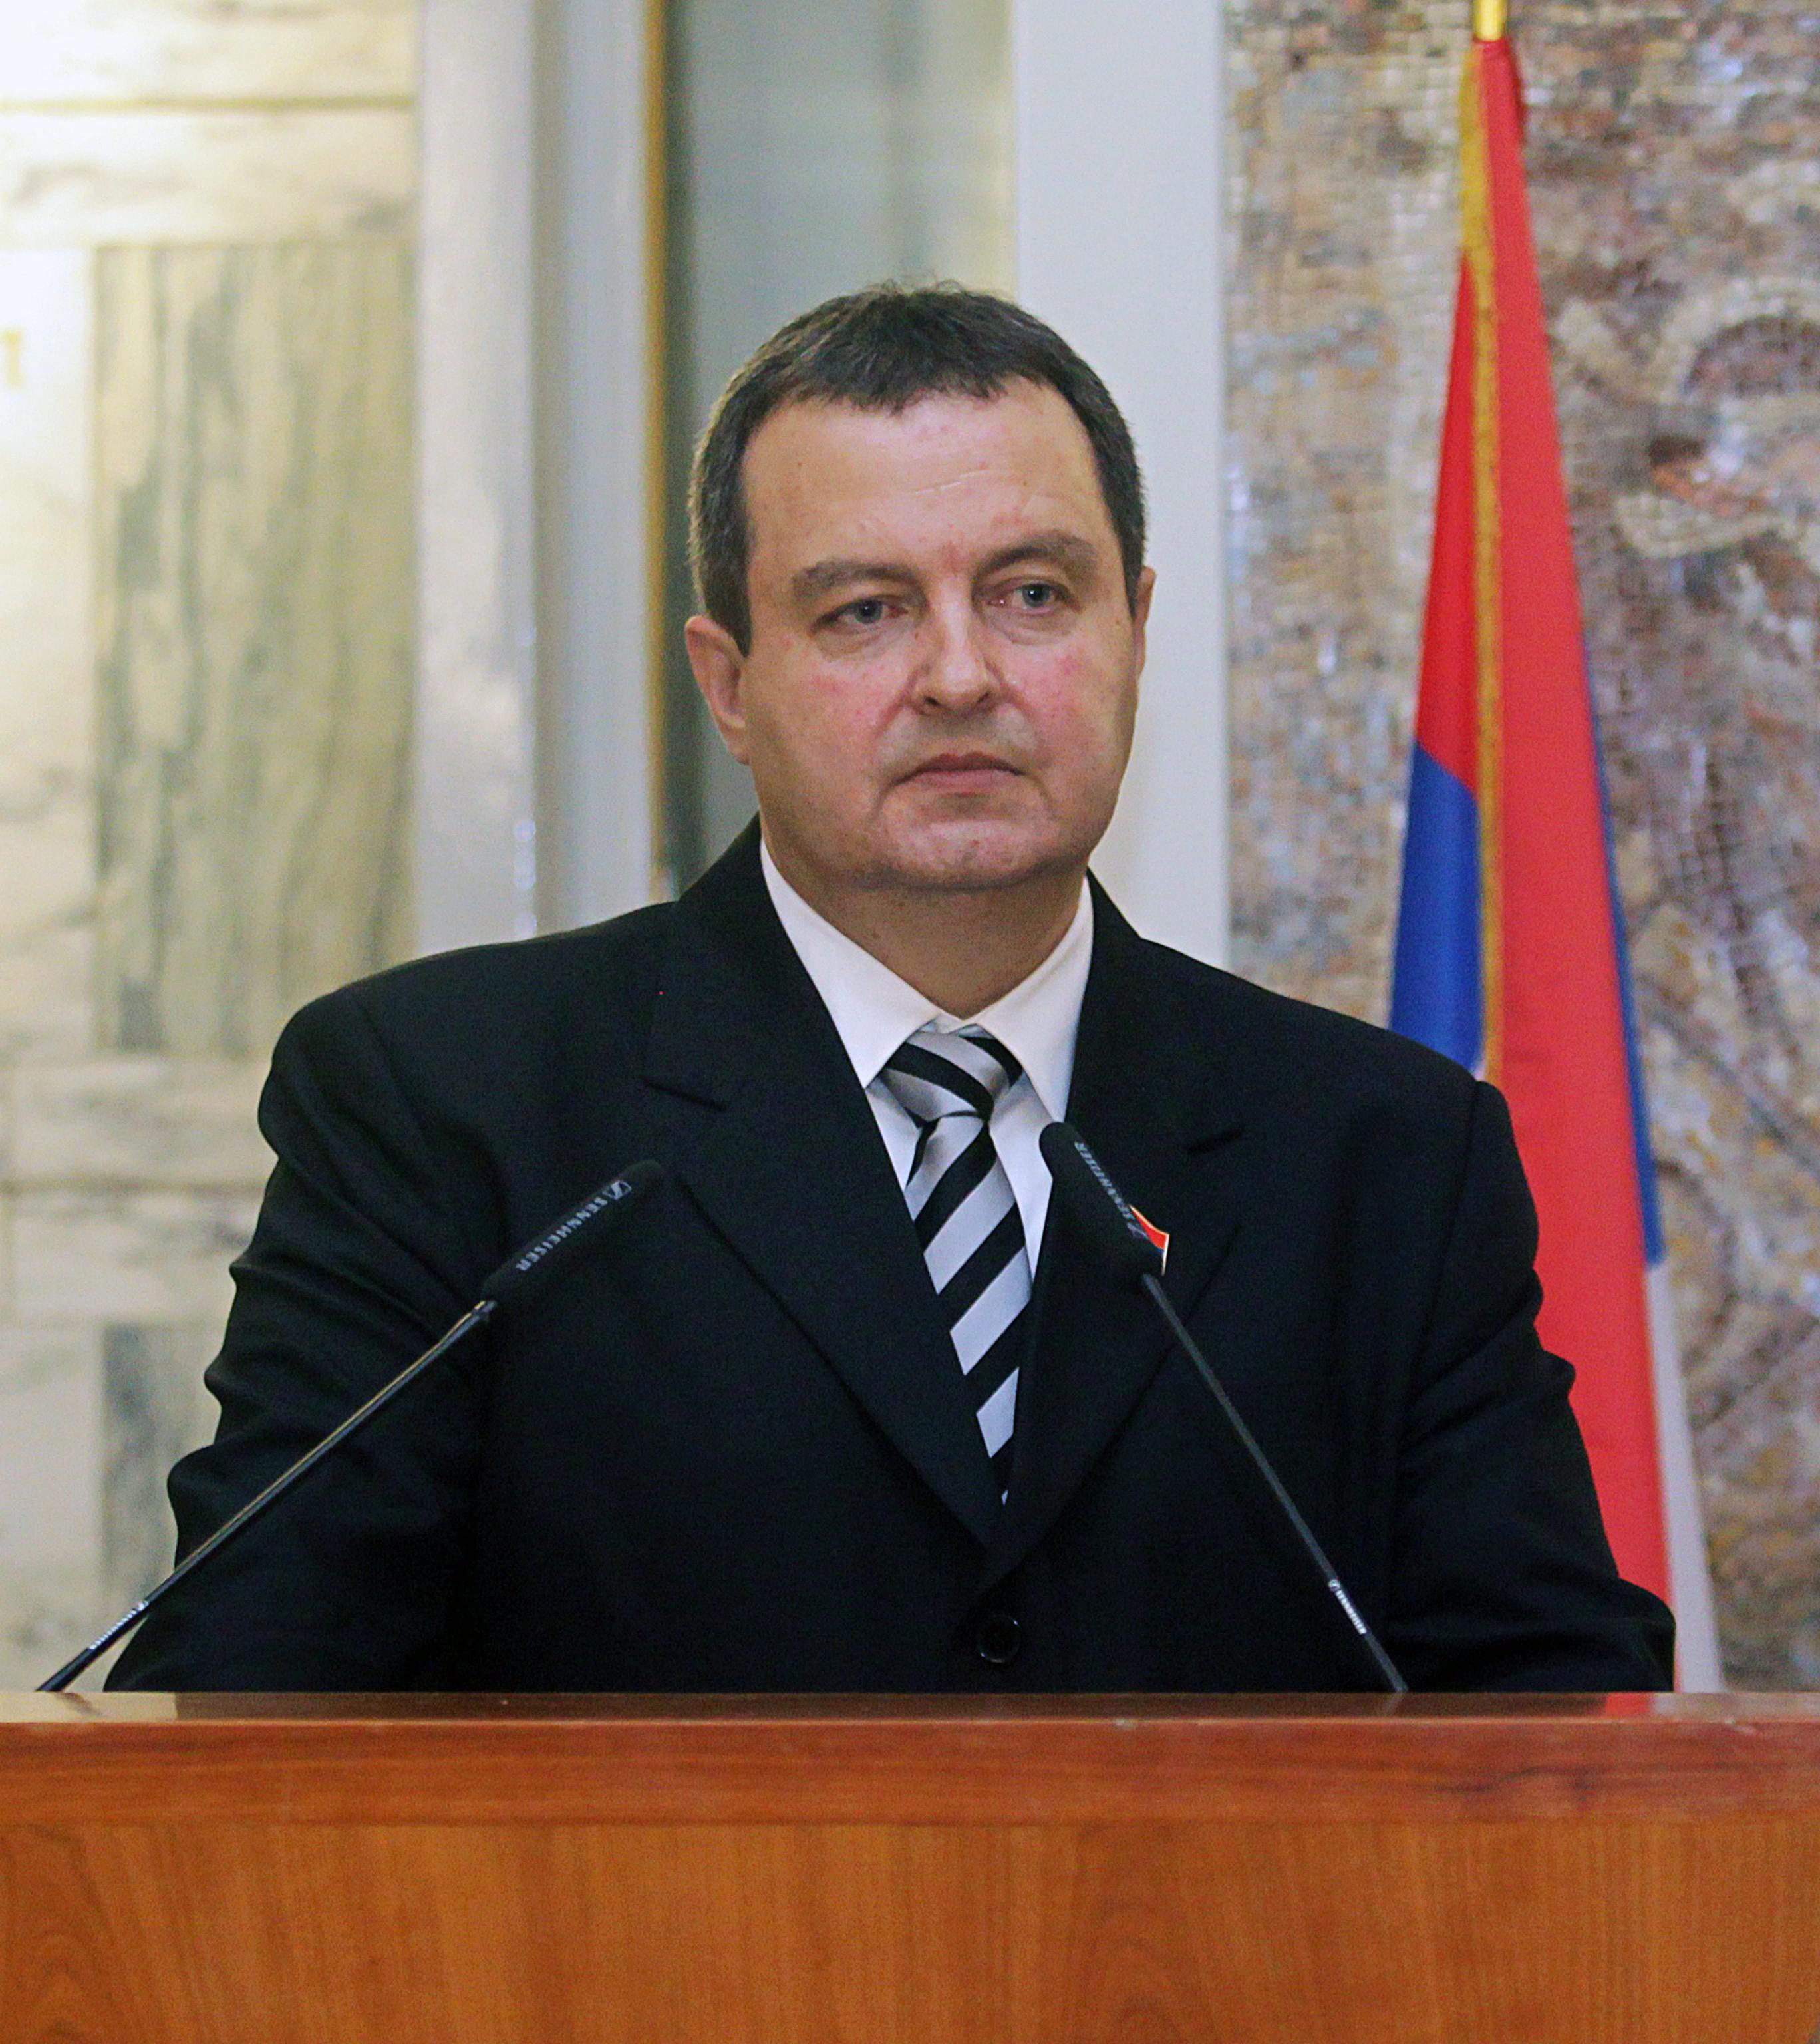 Външният министър на Сърбия Ивица Дачич напомни на Бойко Борсов, че неотдавна получи орден от Белград